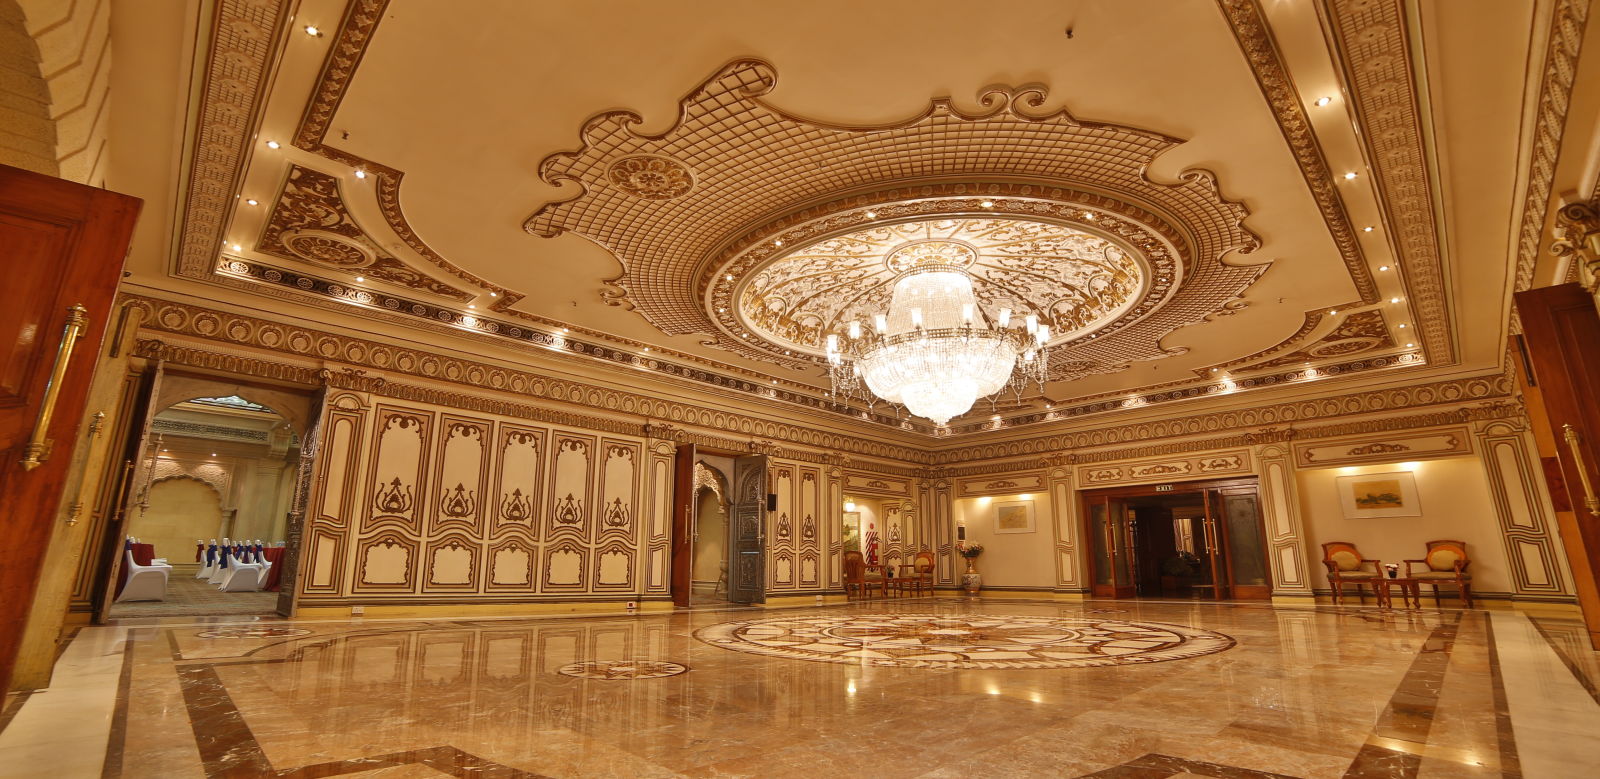  Interiors of Rang Mahal hall at Sitara Luxury Hotel